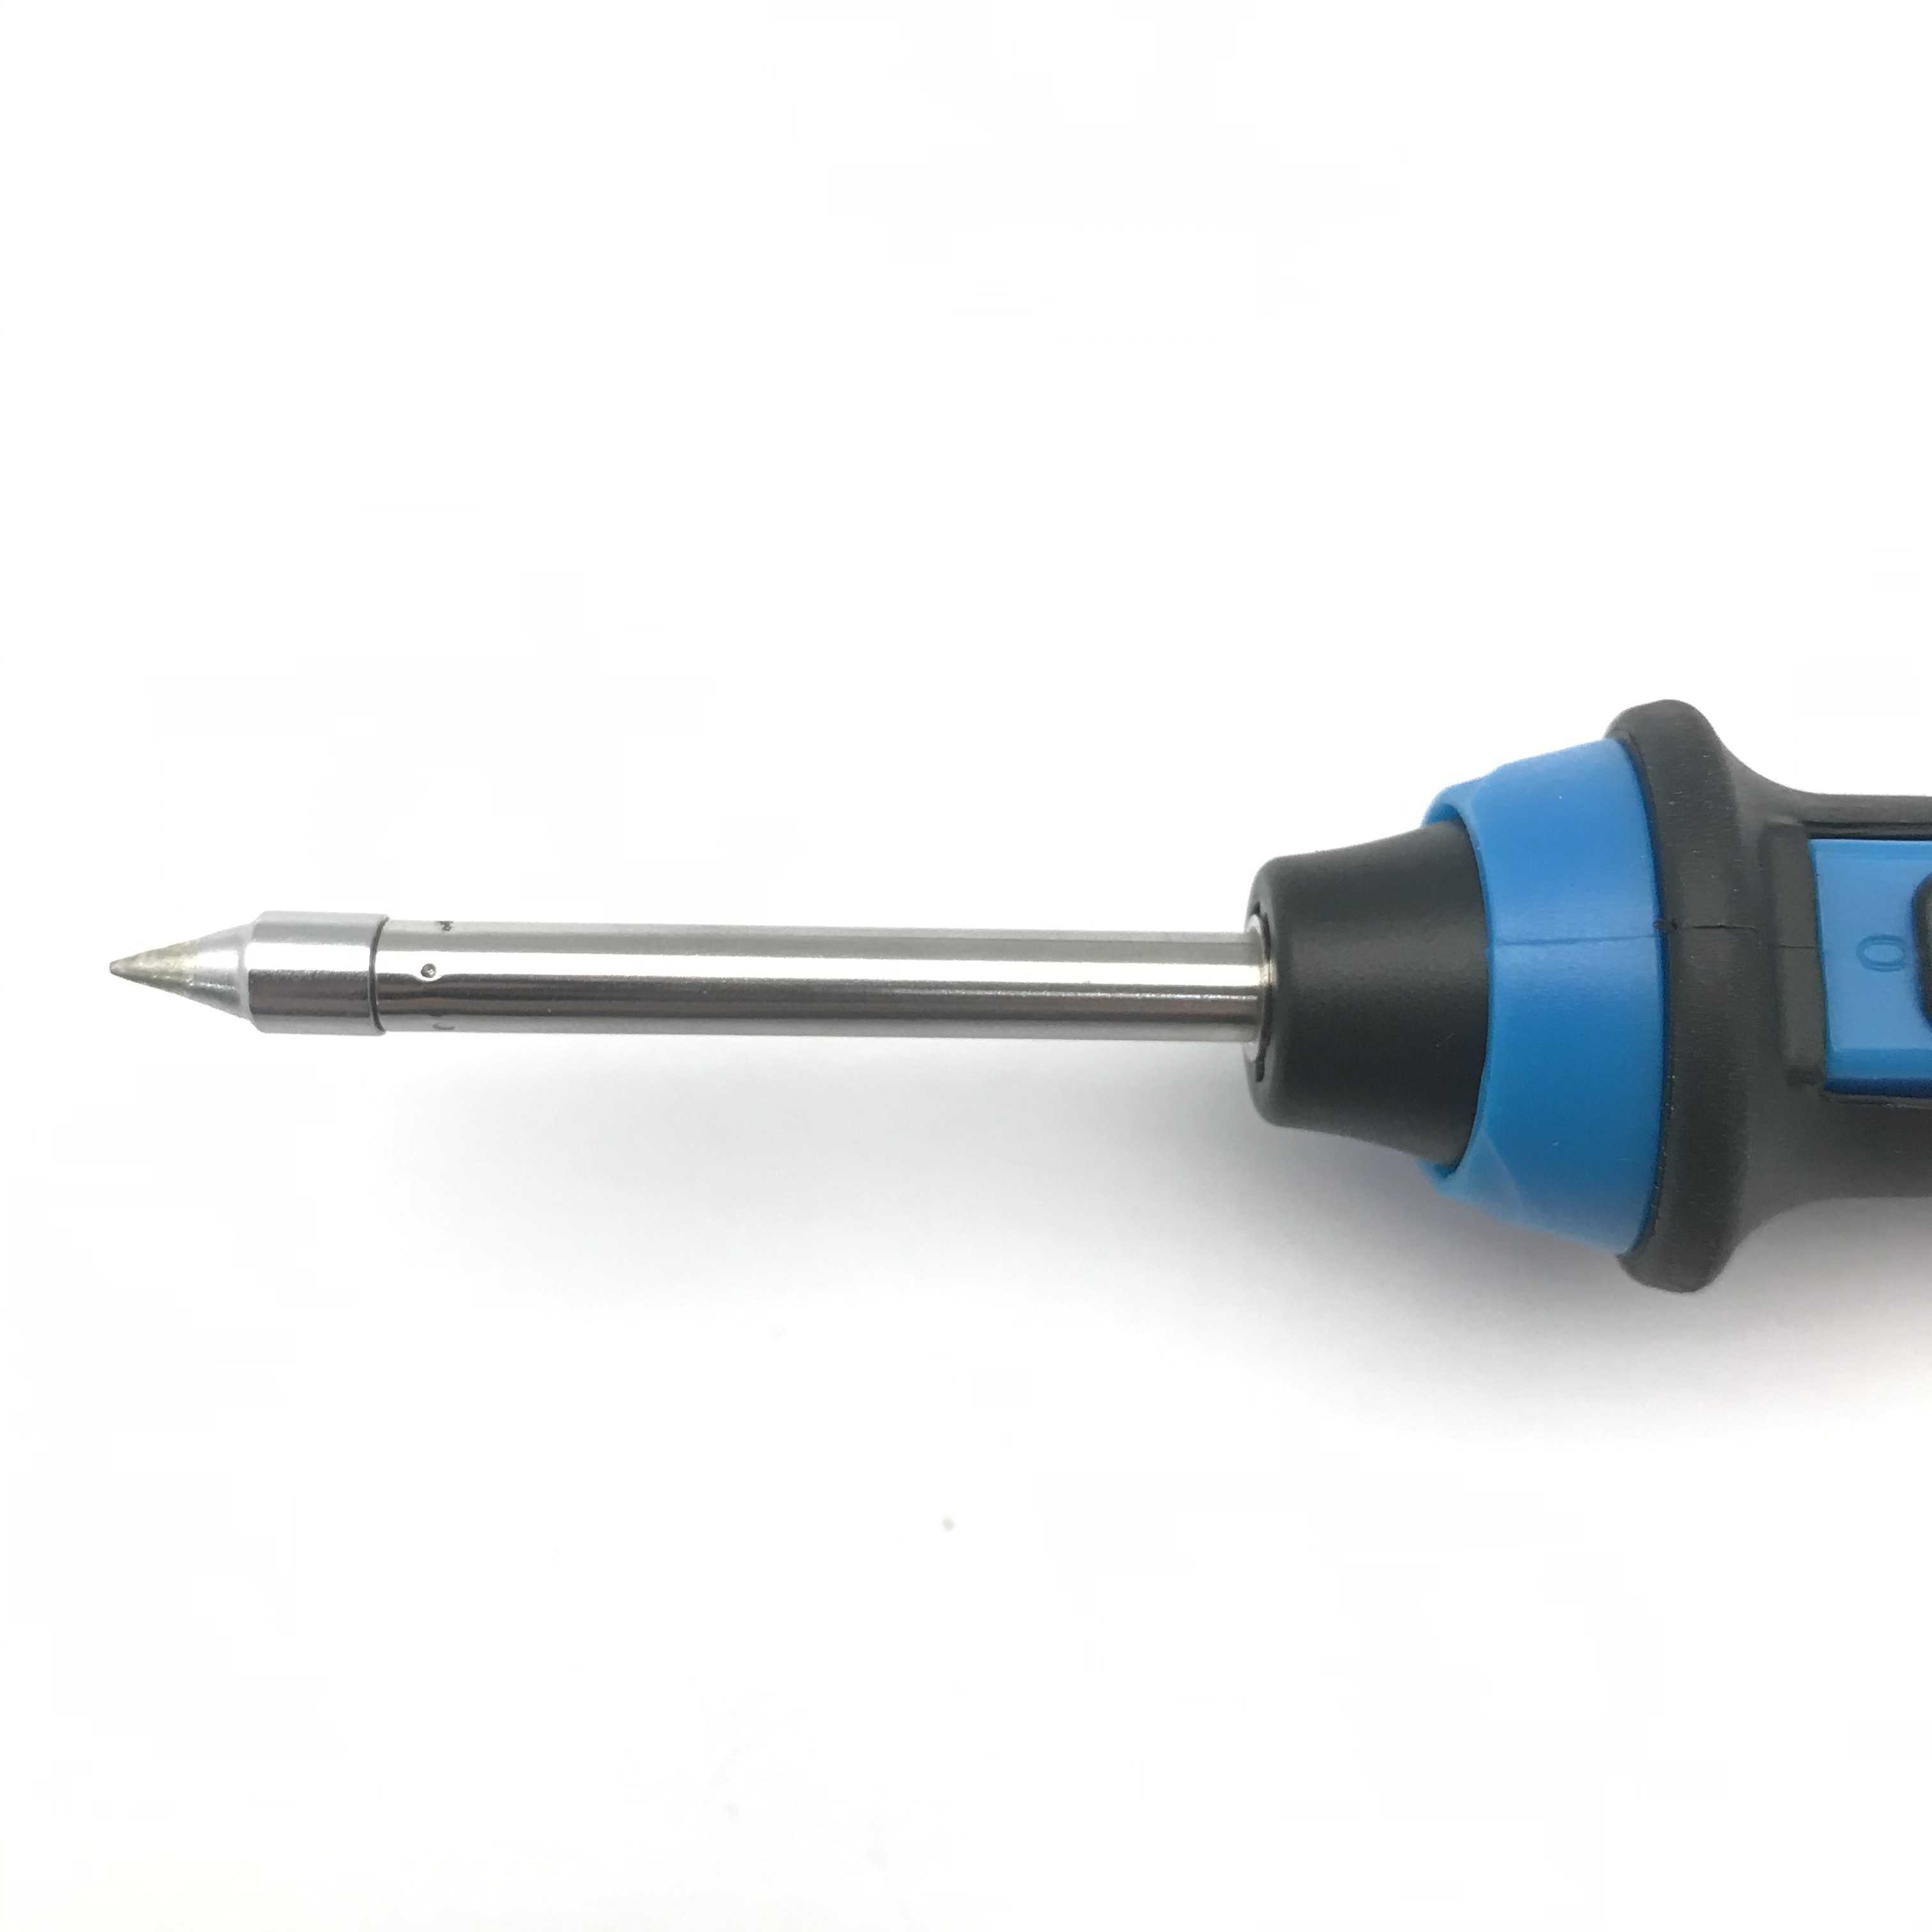 USB電烙鐵(加碼贈送錫絲一盒) 方便攜帶 最高溫可達450度 焊接 維修 工業電子 電焊 電烙筆 焊錫